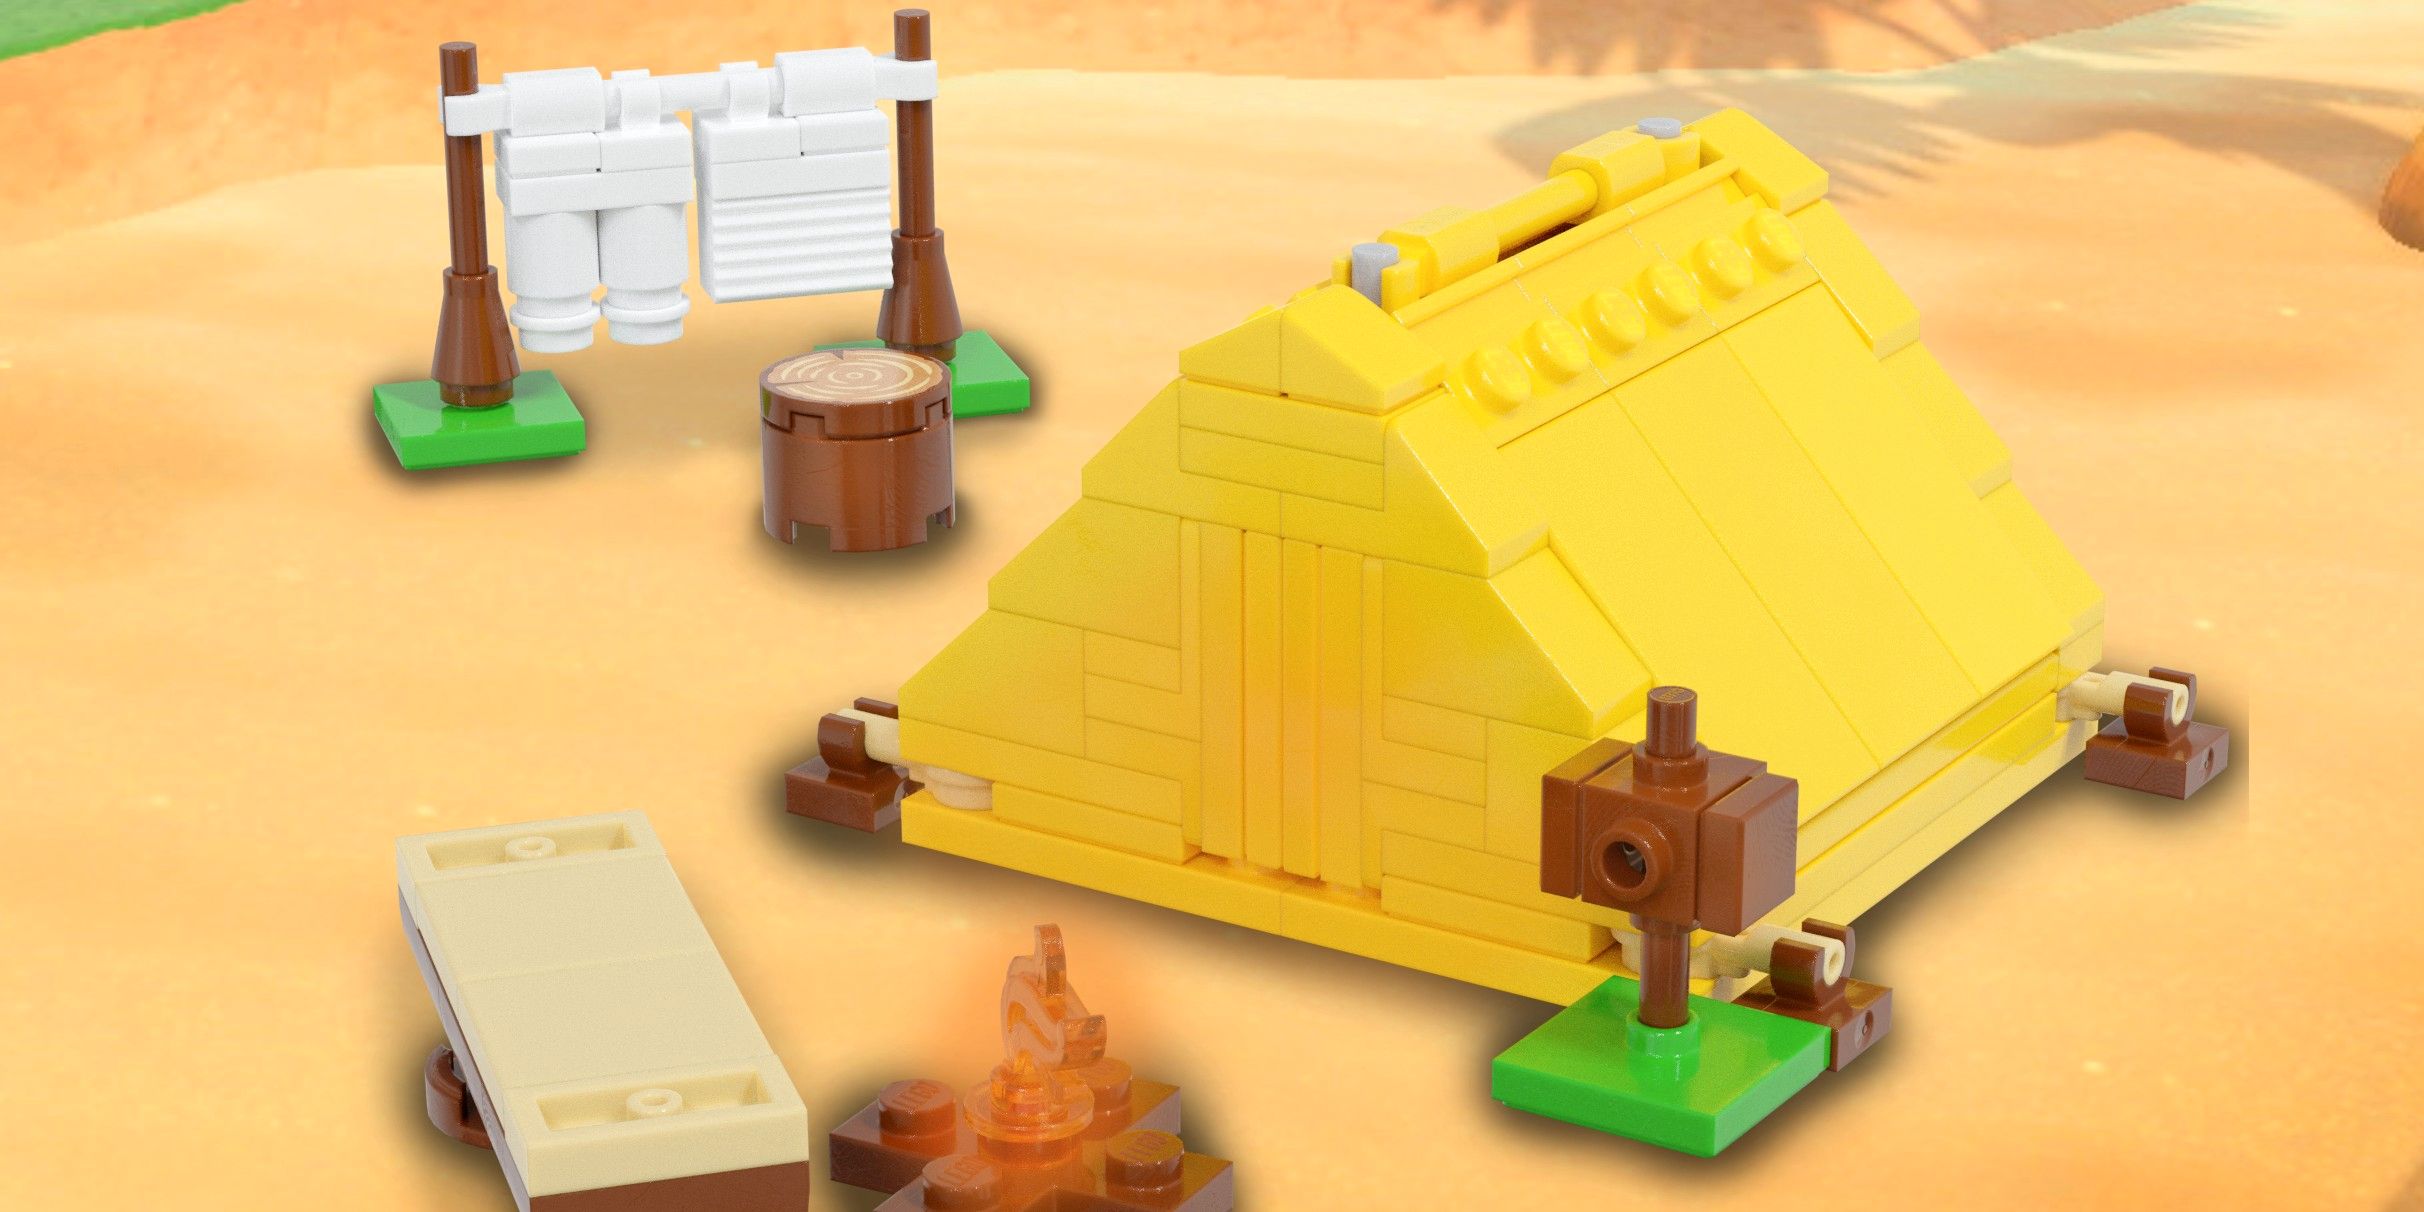 Las construcciones de Lego inspiradas en el juego de los jugadores de ACNH parecen conjuntos oficiales